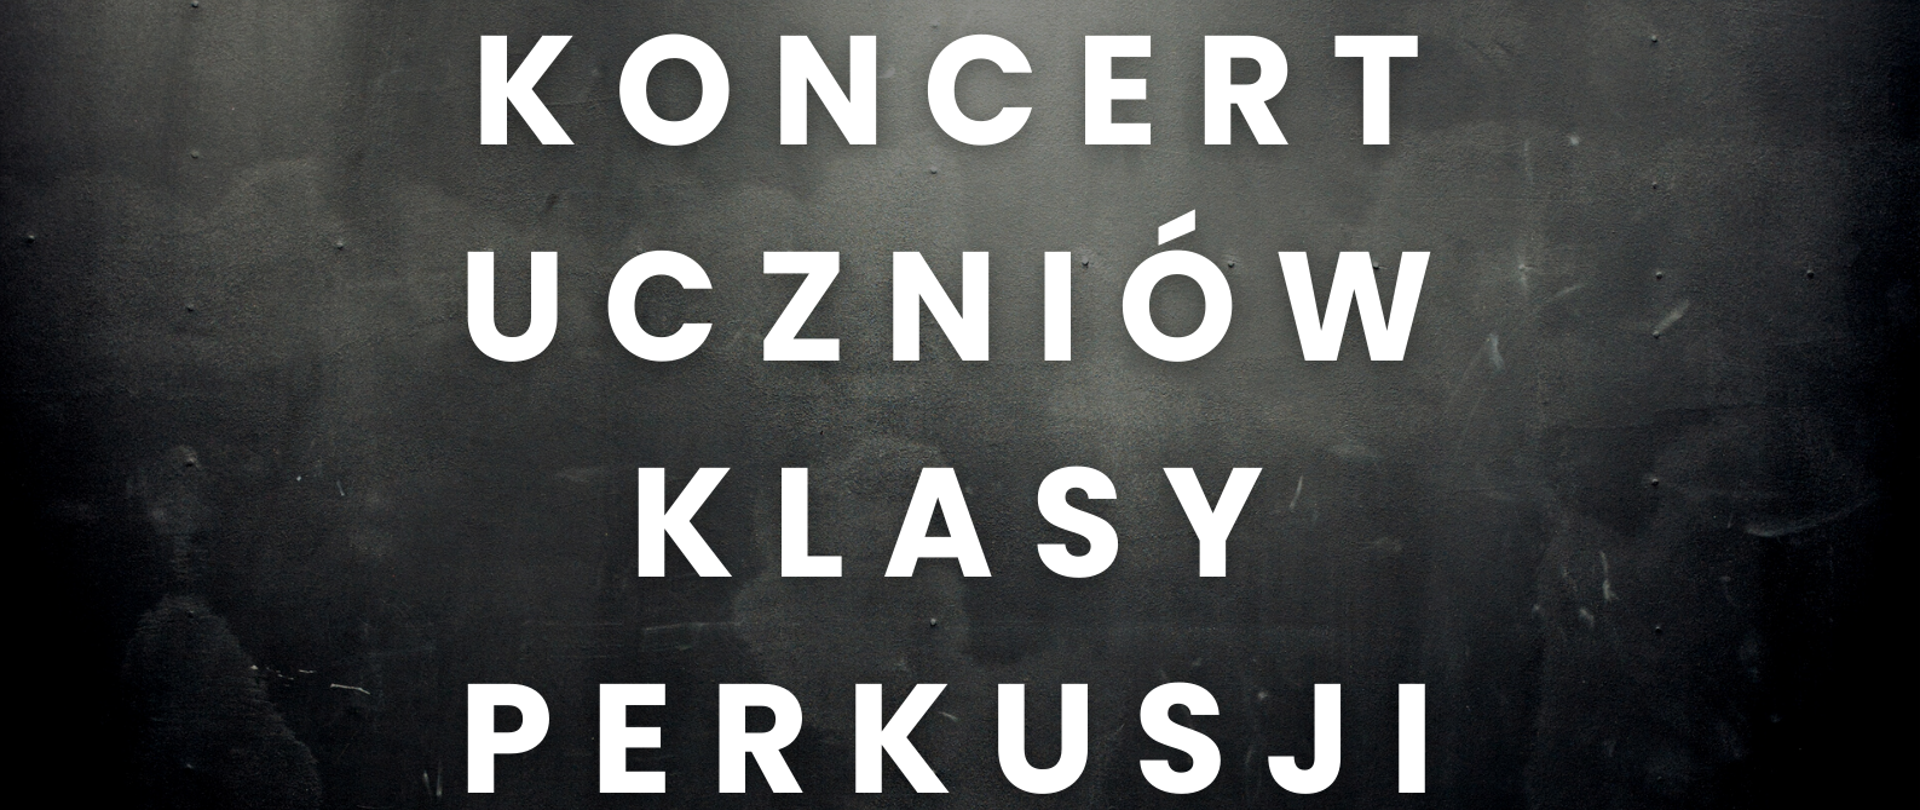 Czarno szare tło plakatu z białymi literami informujące o koncercie perkusyjnym, w prawym dolnym rogu kolorowe nutki.